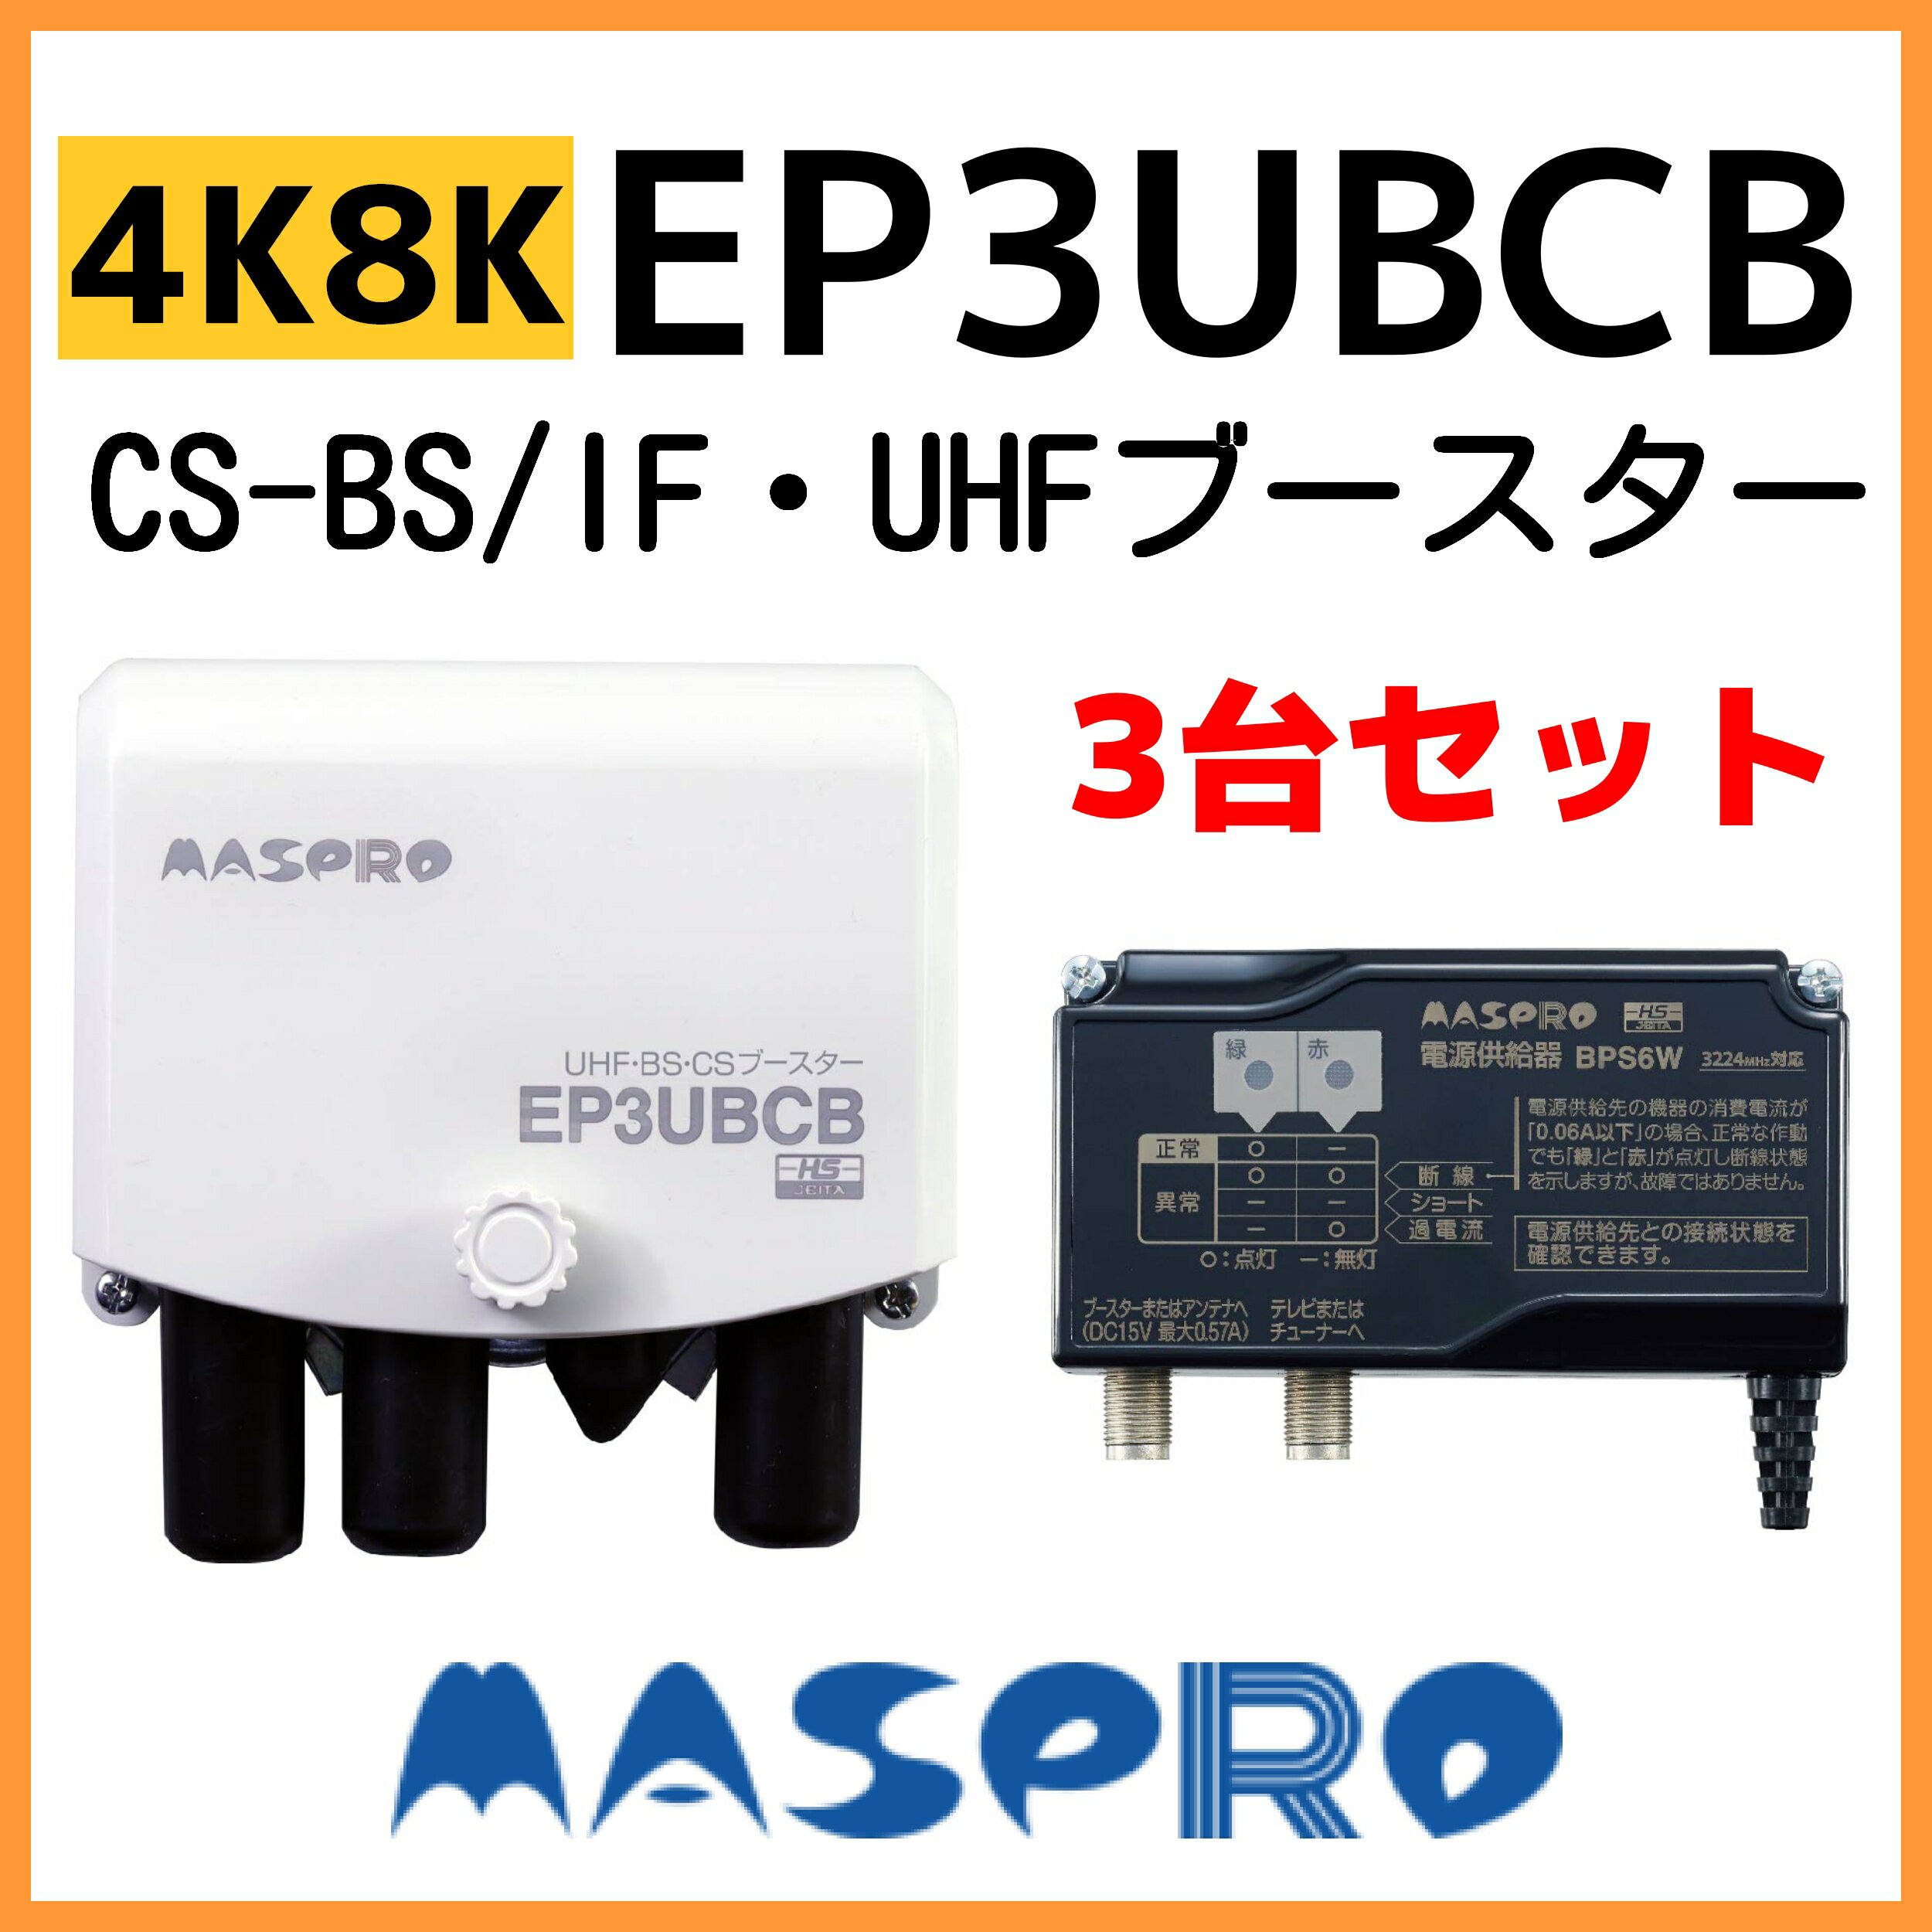 全品送料0円 4K 8K対応 新製品です マスプロ UHF BS CS ブースター EP3UBCB 3台セット  acaoestrategica.com.br